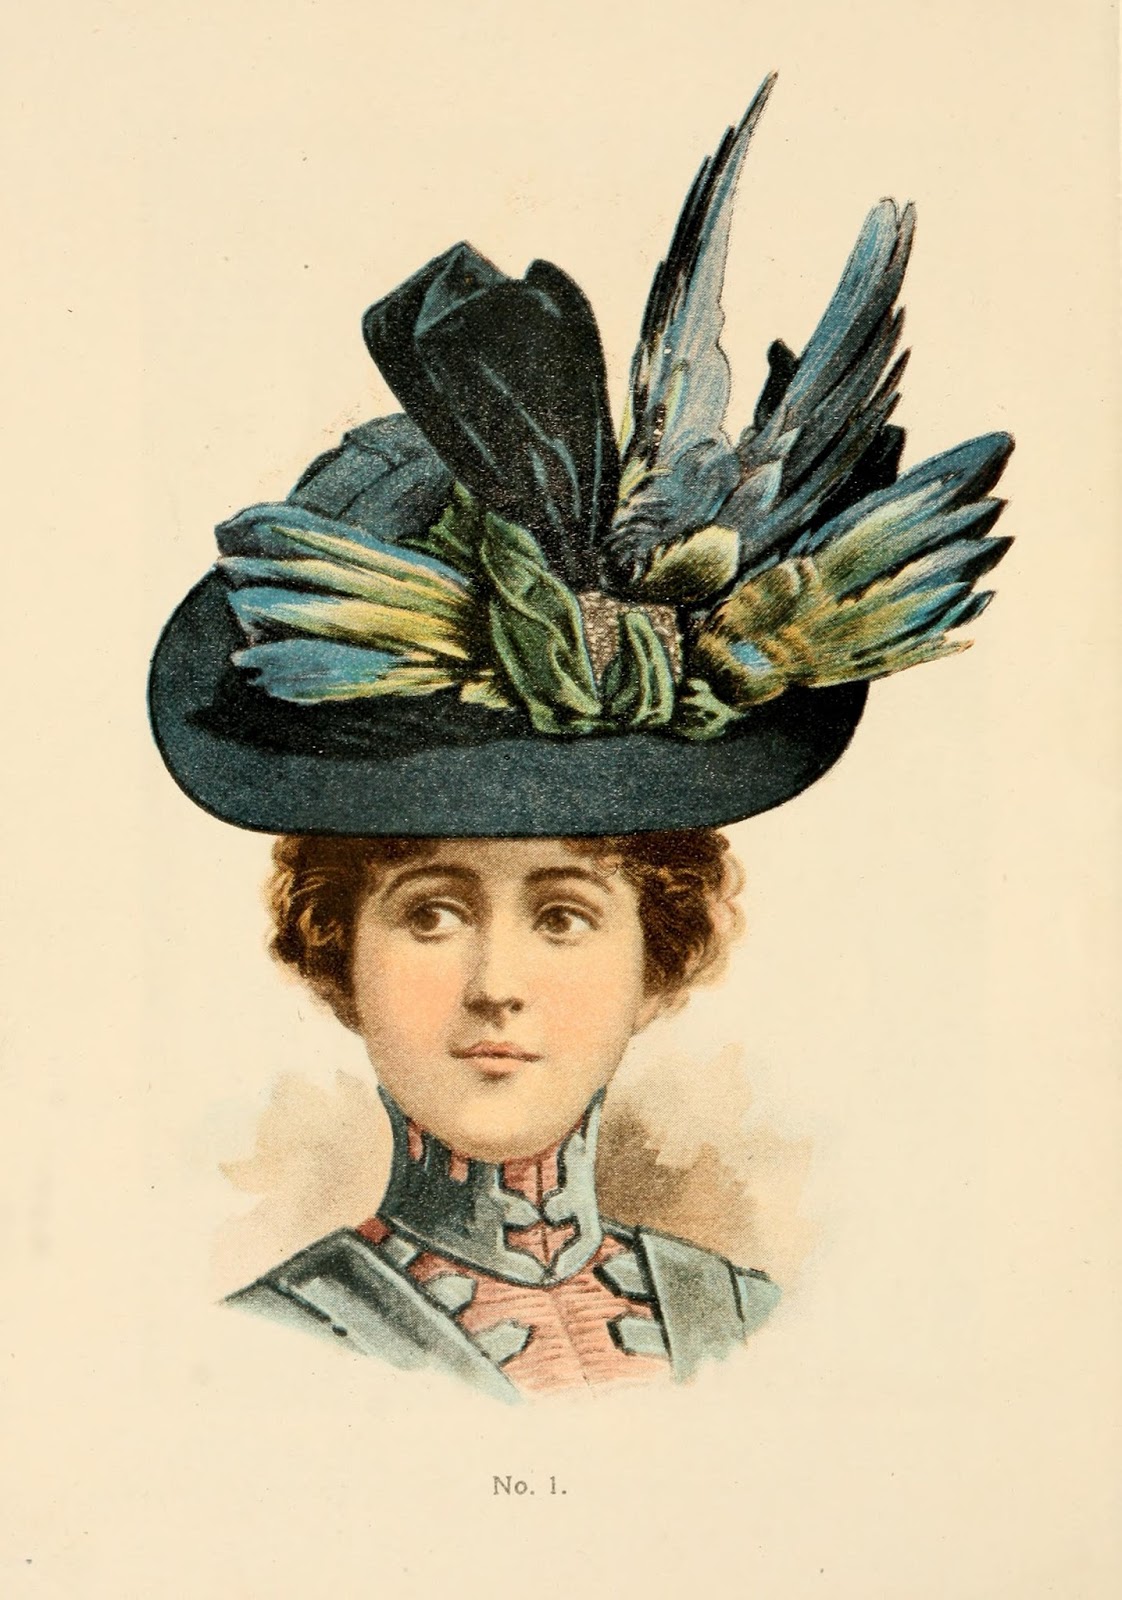 Шляпа 17 века. Шляпы эдвардианской эпохи. Шляпы Циммерман 19 век. Эдвардианская мода шляпы. Шляпы 18-19 века.